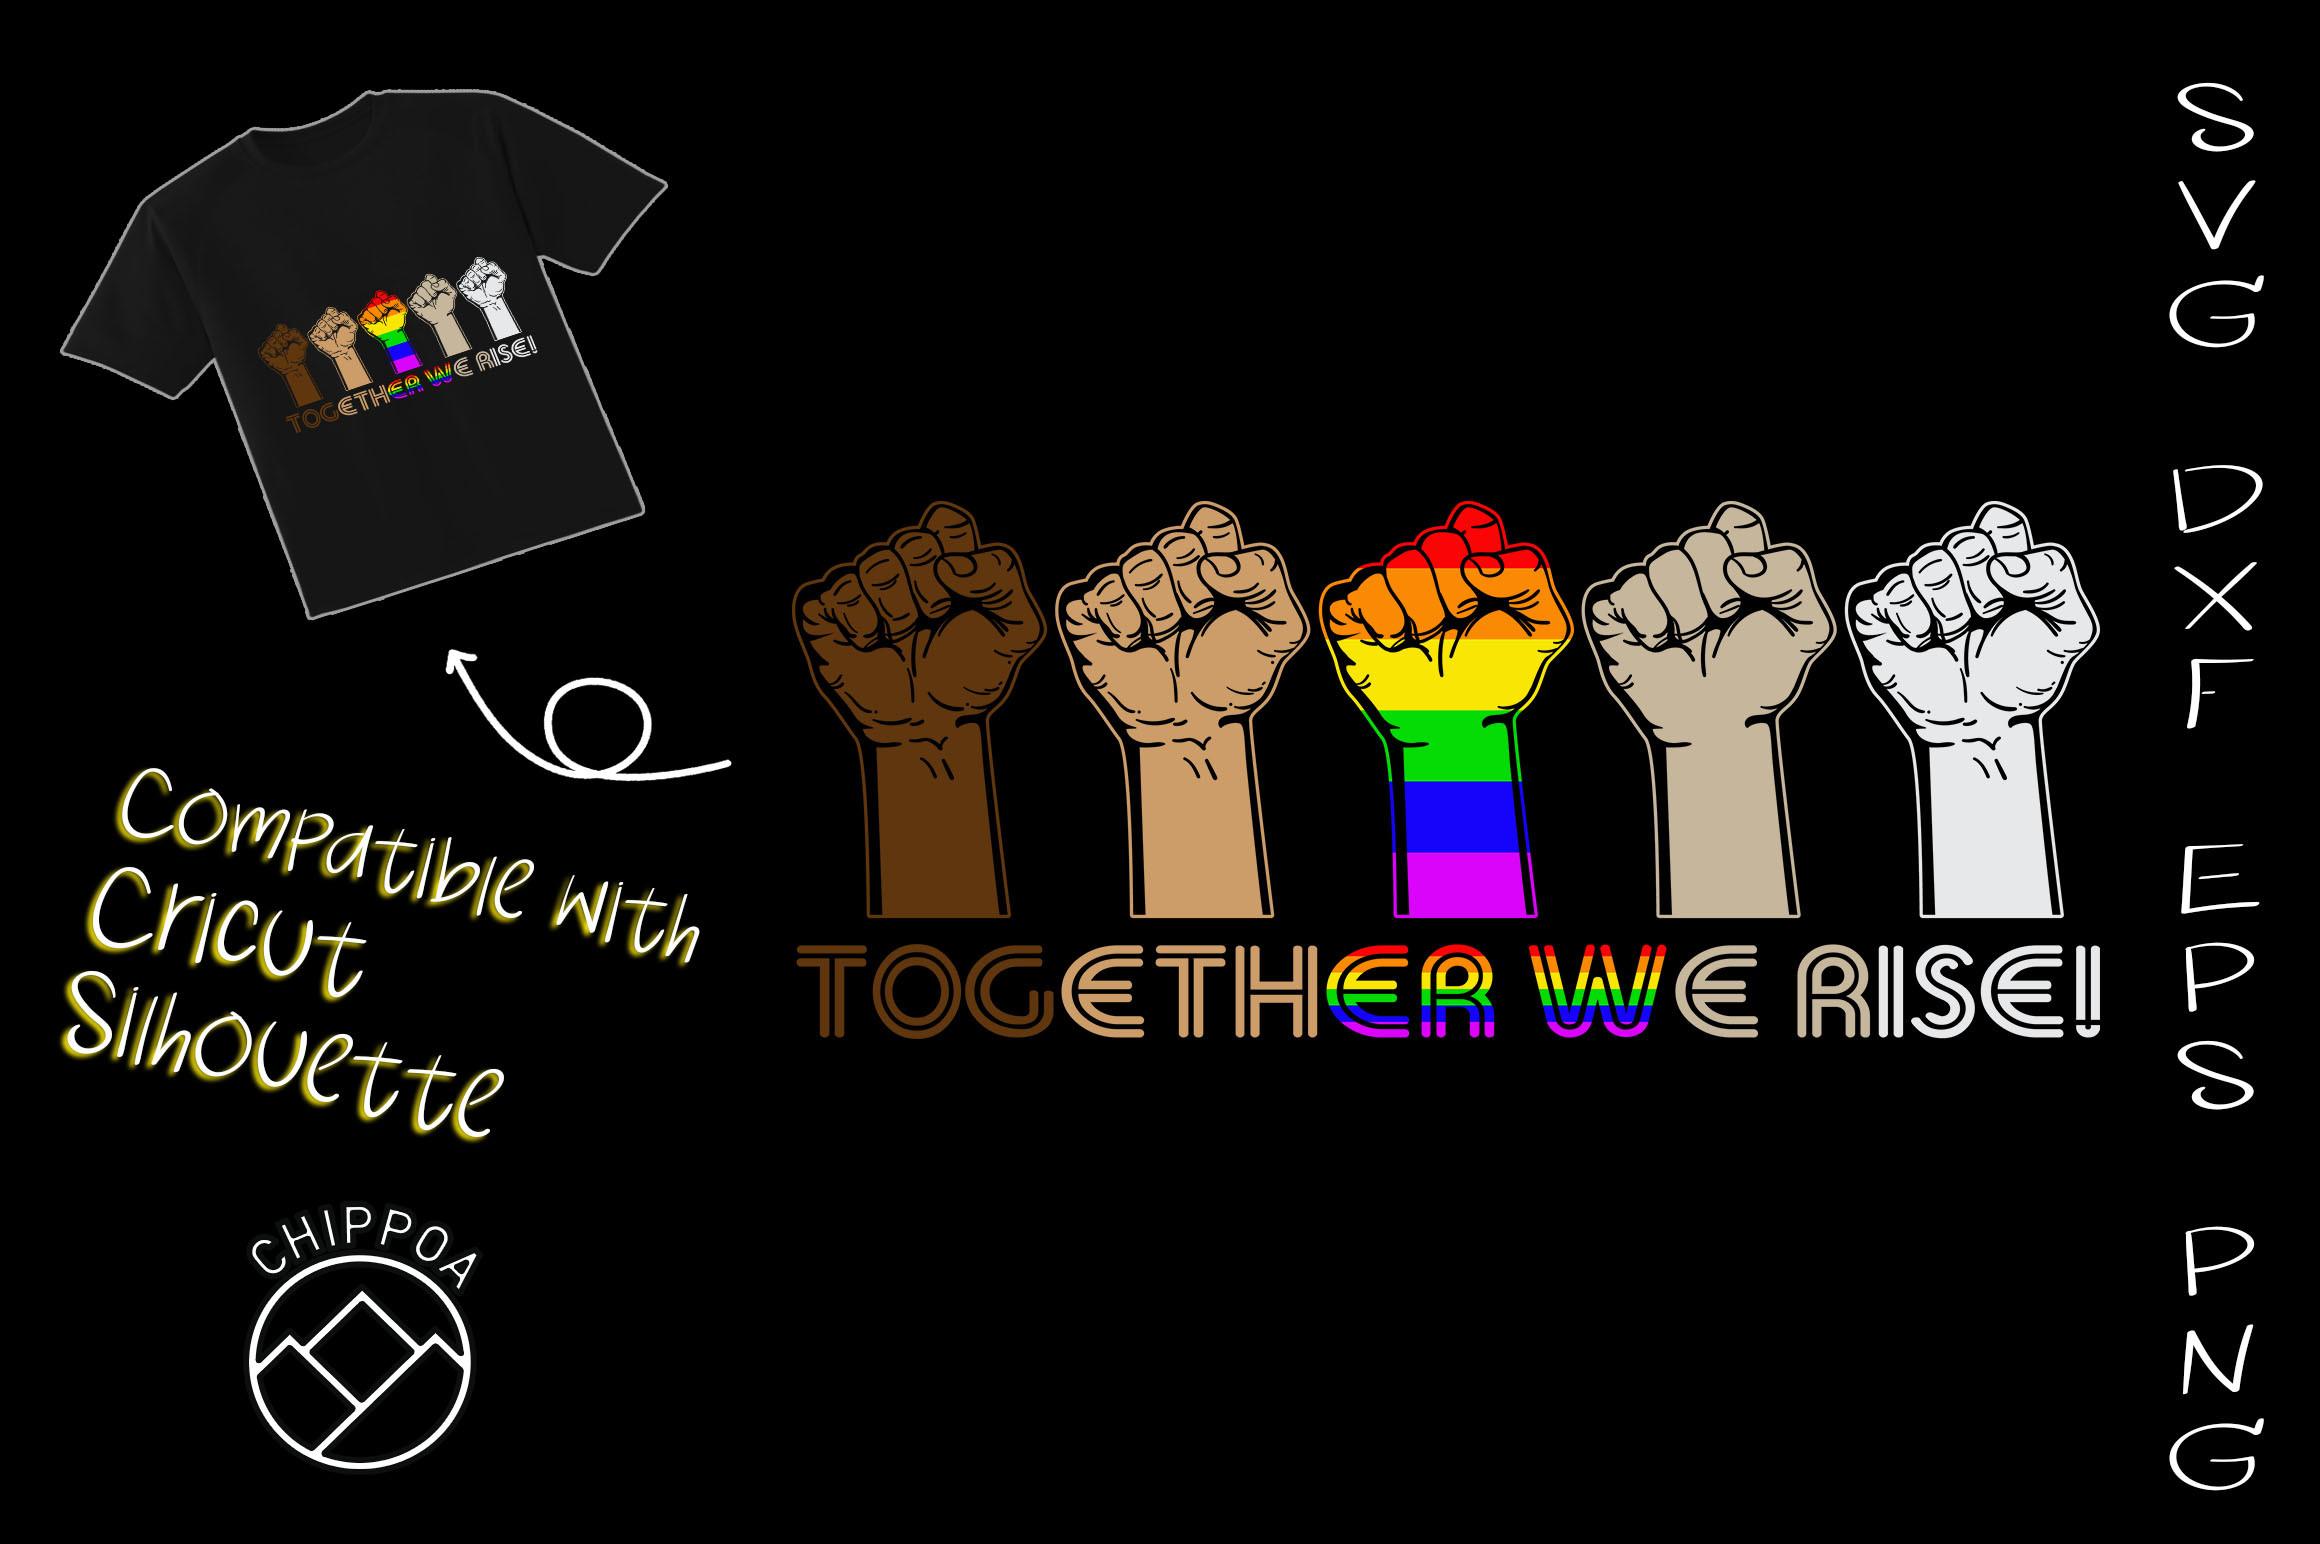 Together We Rise - Black Lives Matter